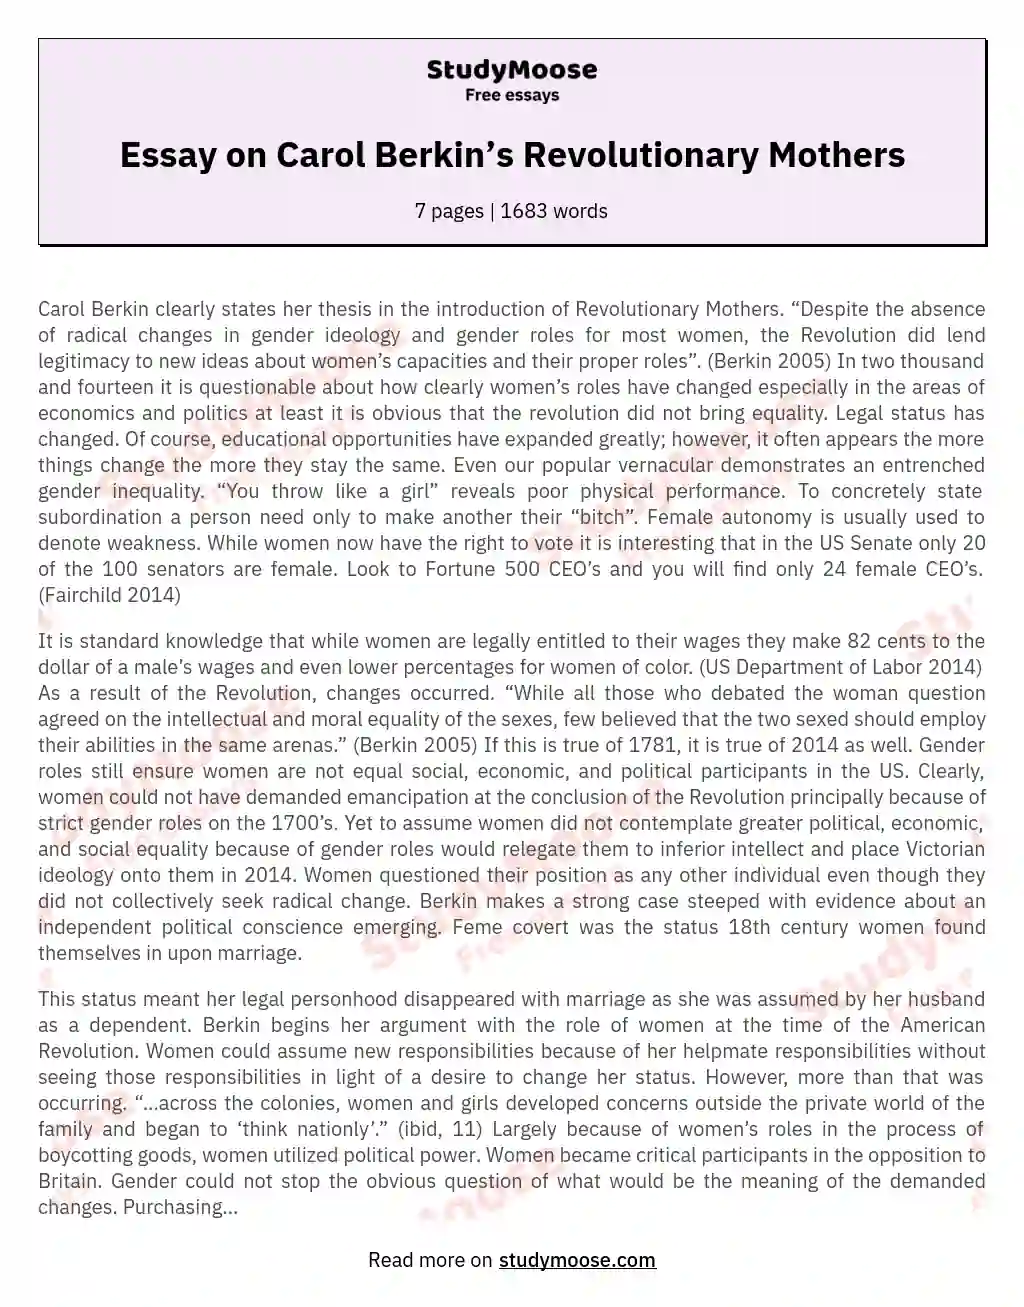 Essay on Carol Berkin’s Revolutionary Mothers